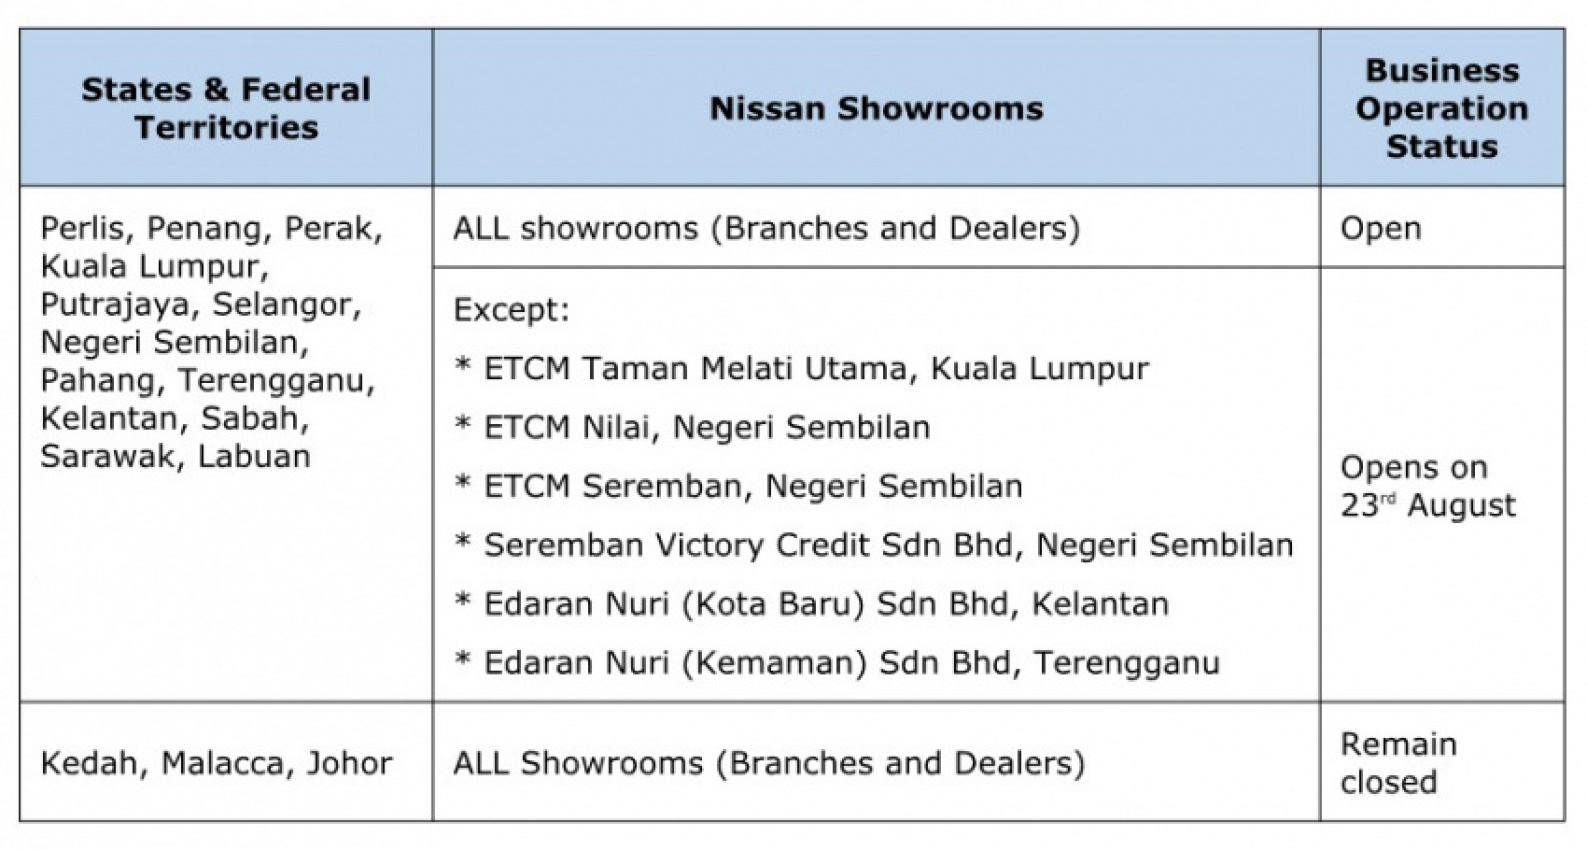 autos, car brands, cars, nissan, automotive, dealerships, edaran tan chong motor, etcm, malaysia, showroom, nissan showrooms resume operations